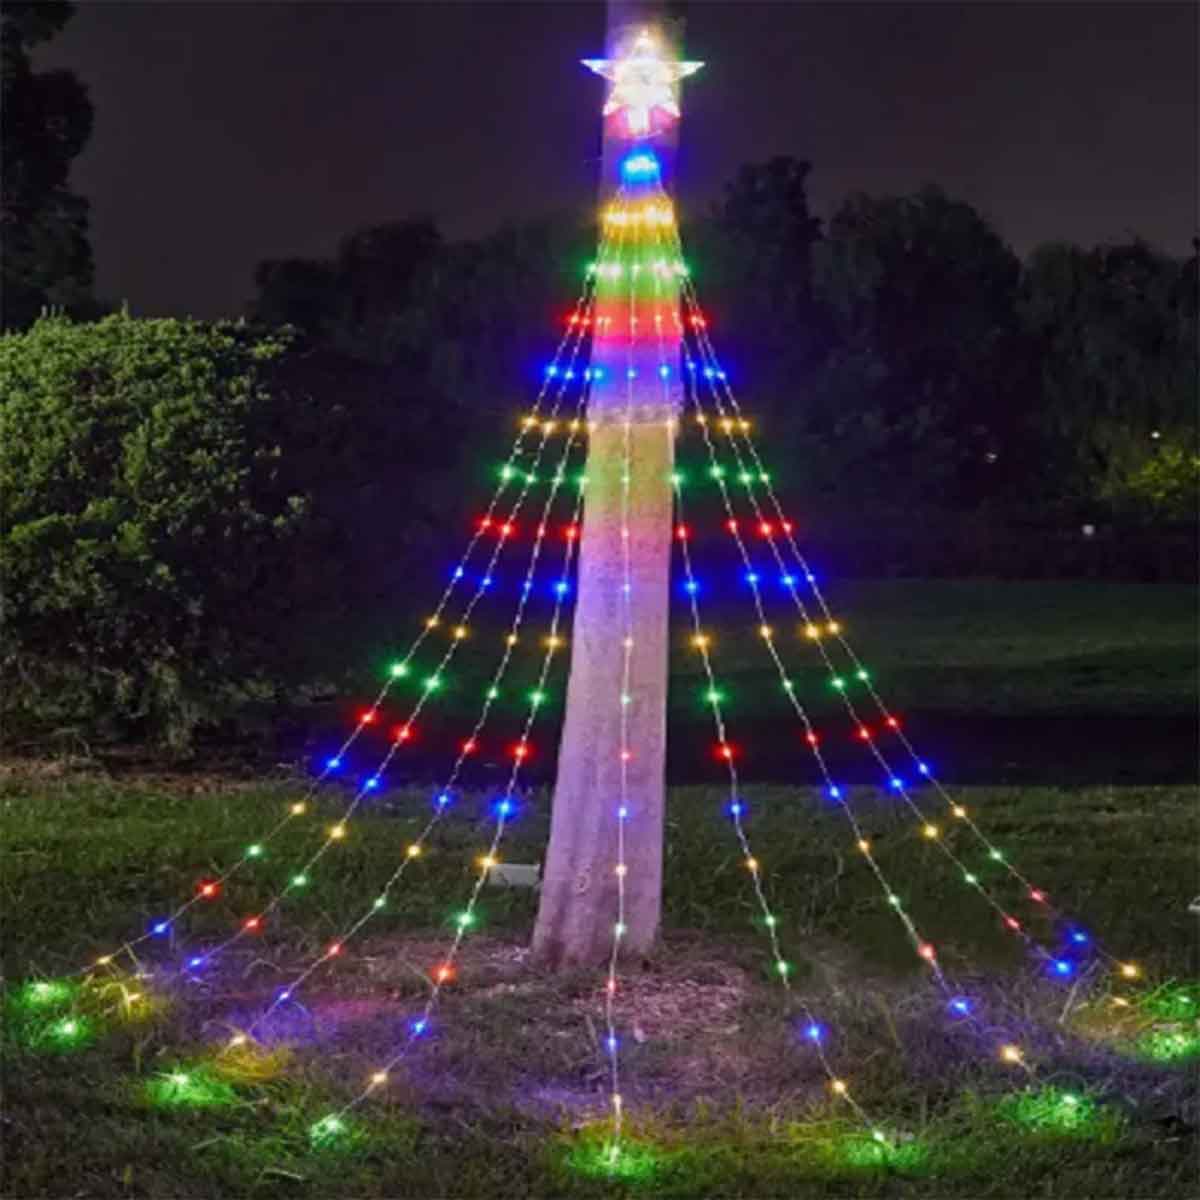 Χριστουγεννιάτικα LED φωτάκια σε σχήμα δέντρου με αστέρι 2m εξωτερικού χώρου DY-27 πολύχρωμα